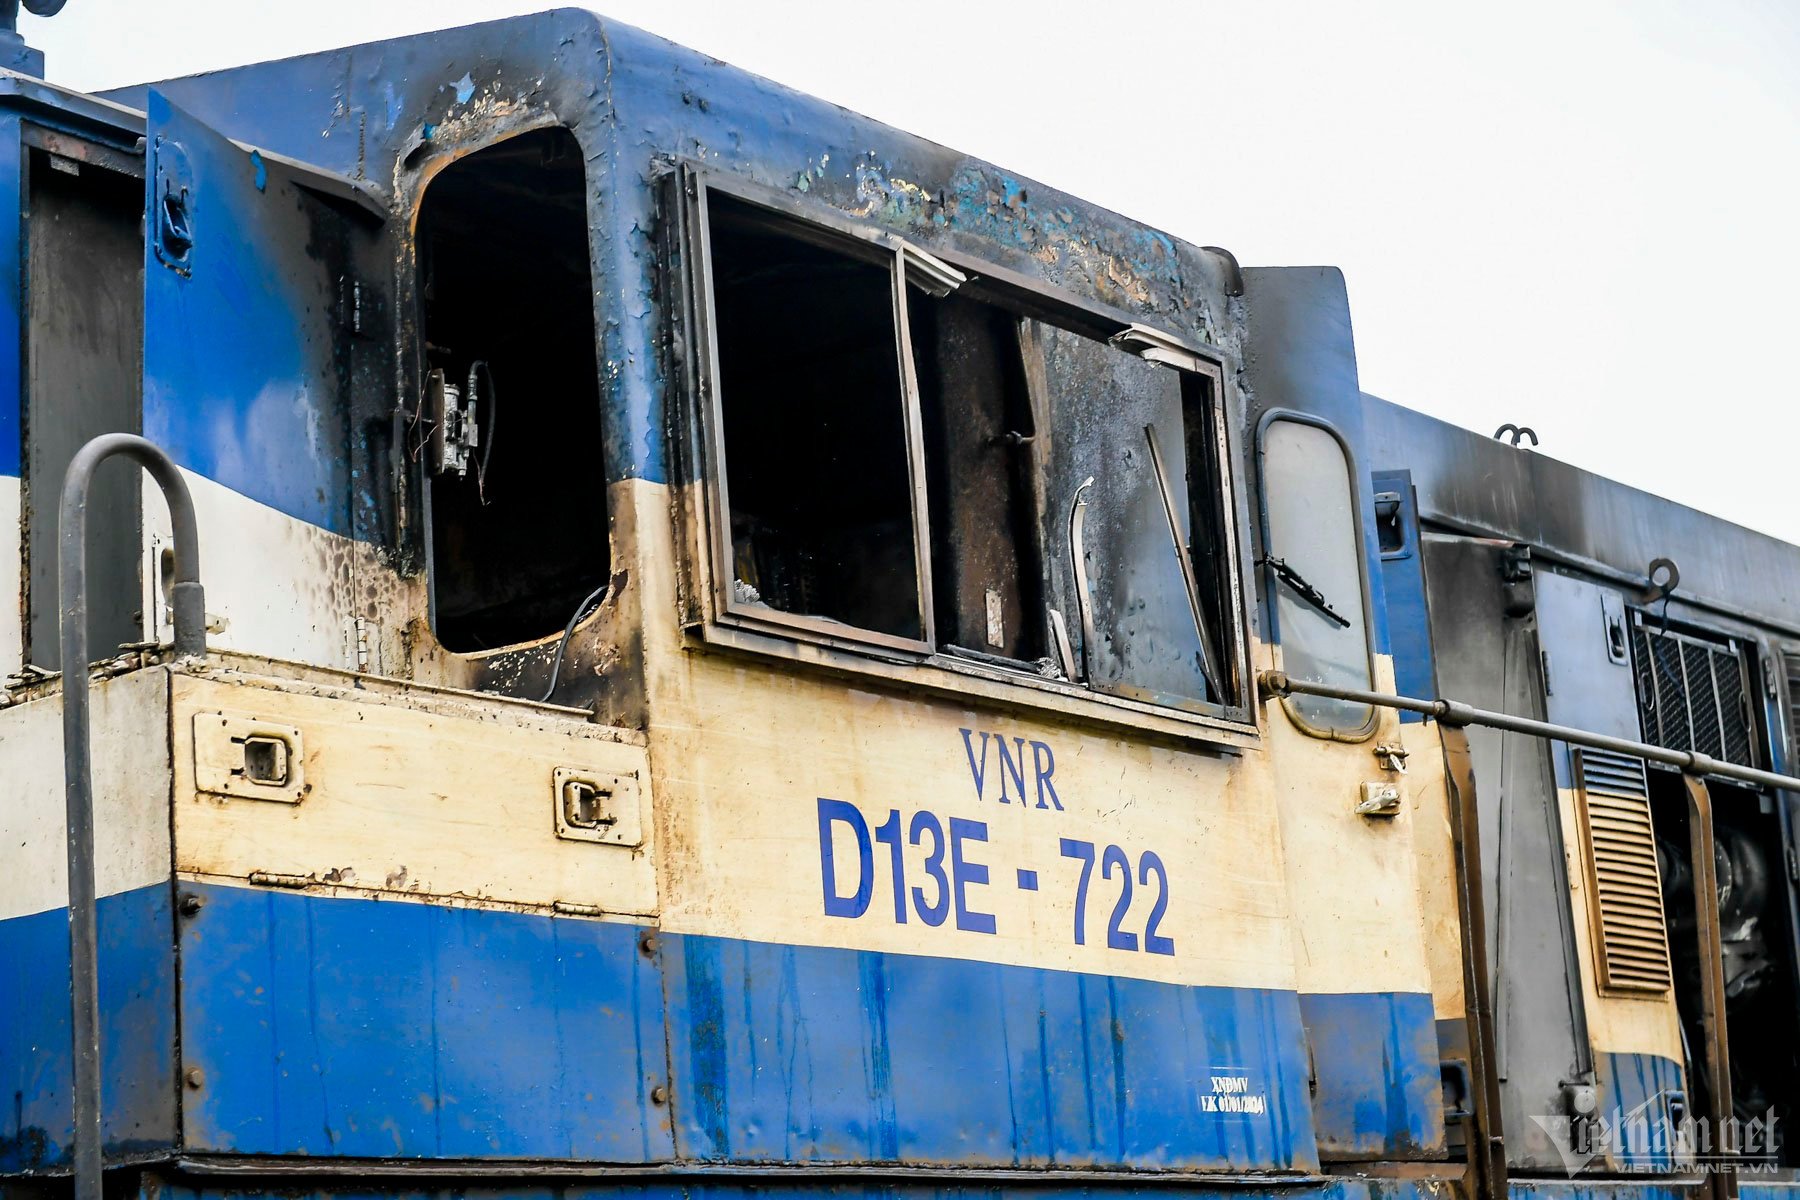 Đoàn tàu chở hàng bất ngờ bốc cháy dữ dội trên đường ray ở Nam Định